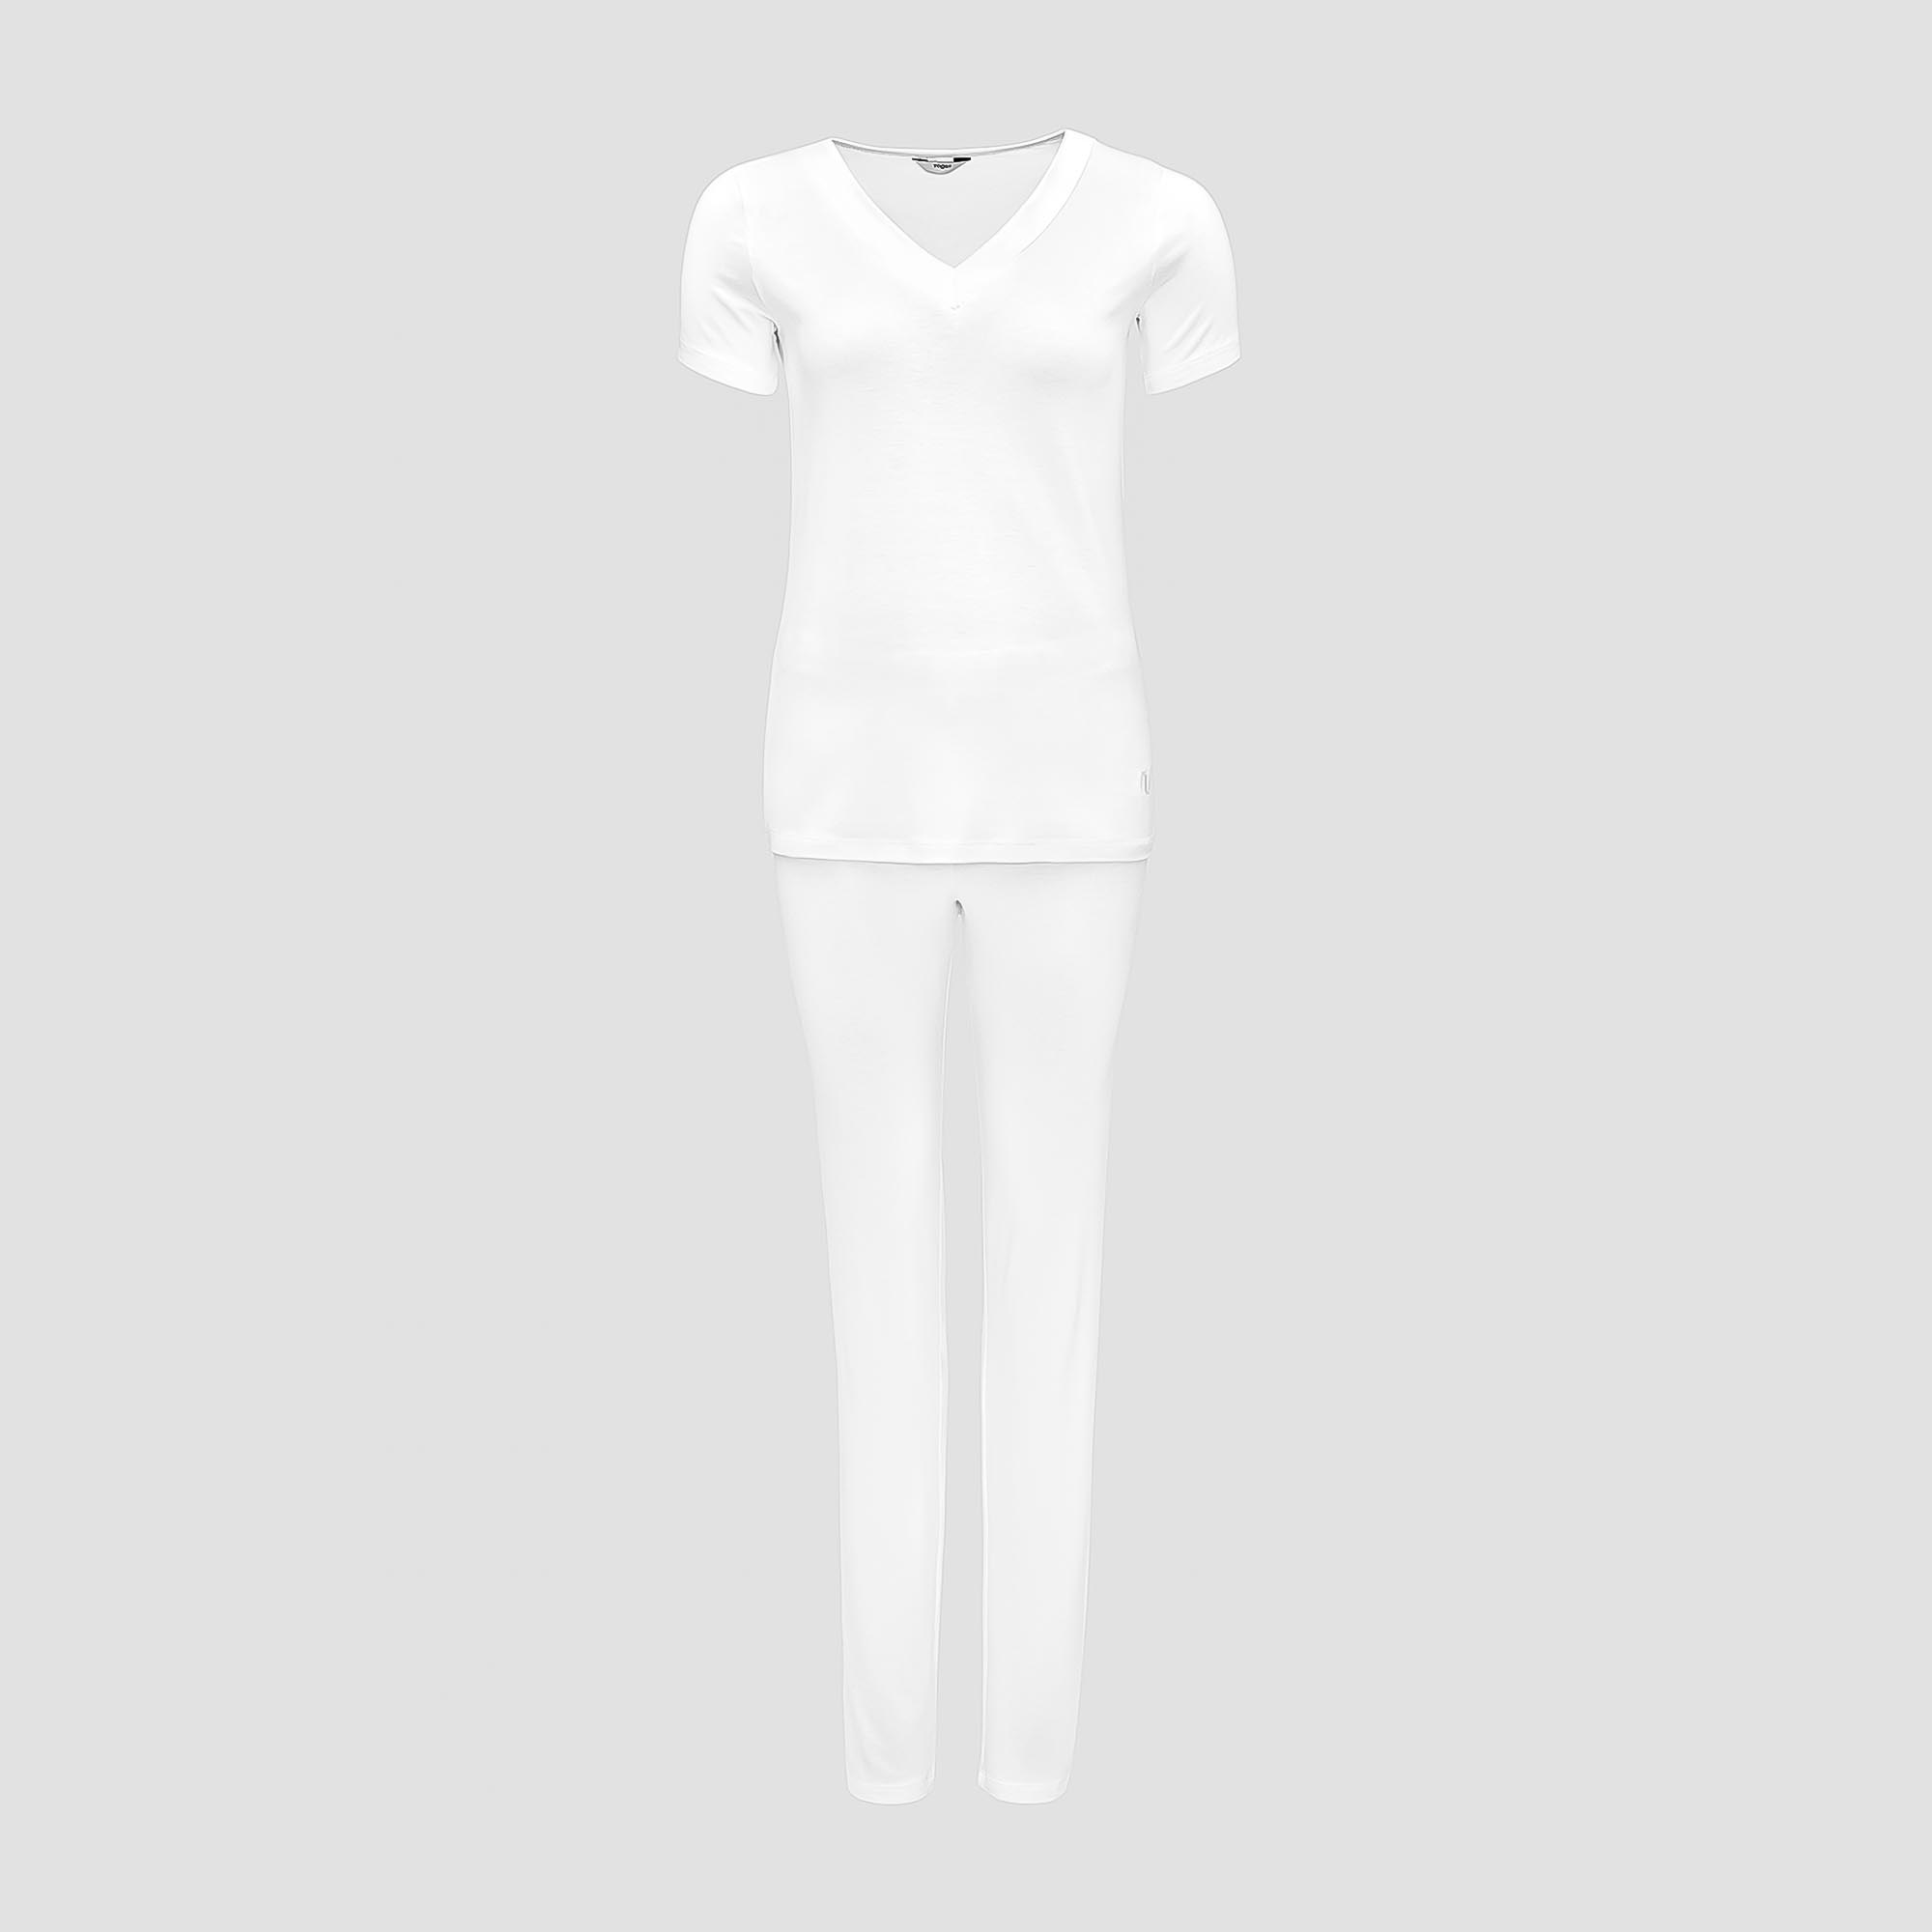 Пижама Togas Ингелла белая женская L(48) 2 предмета пижама рубашка брюки